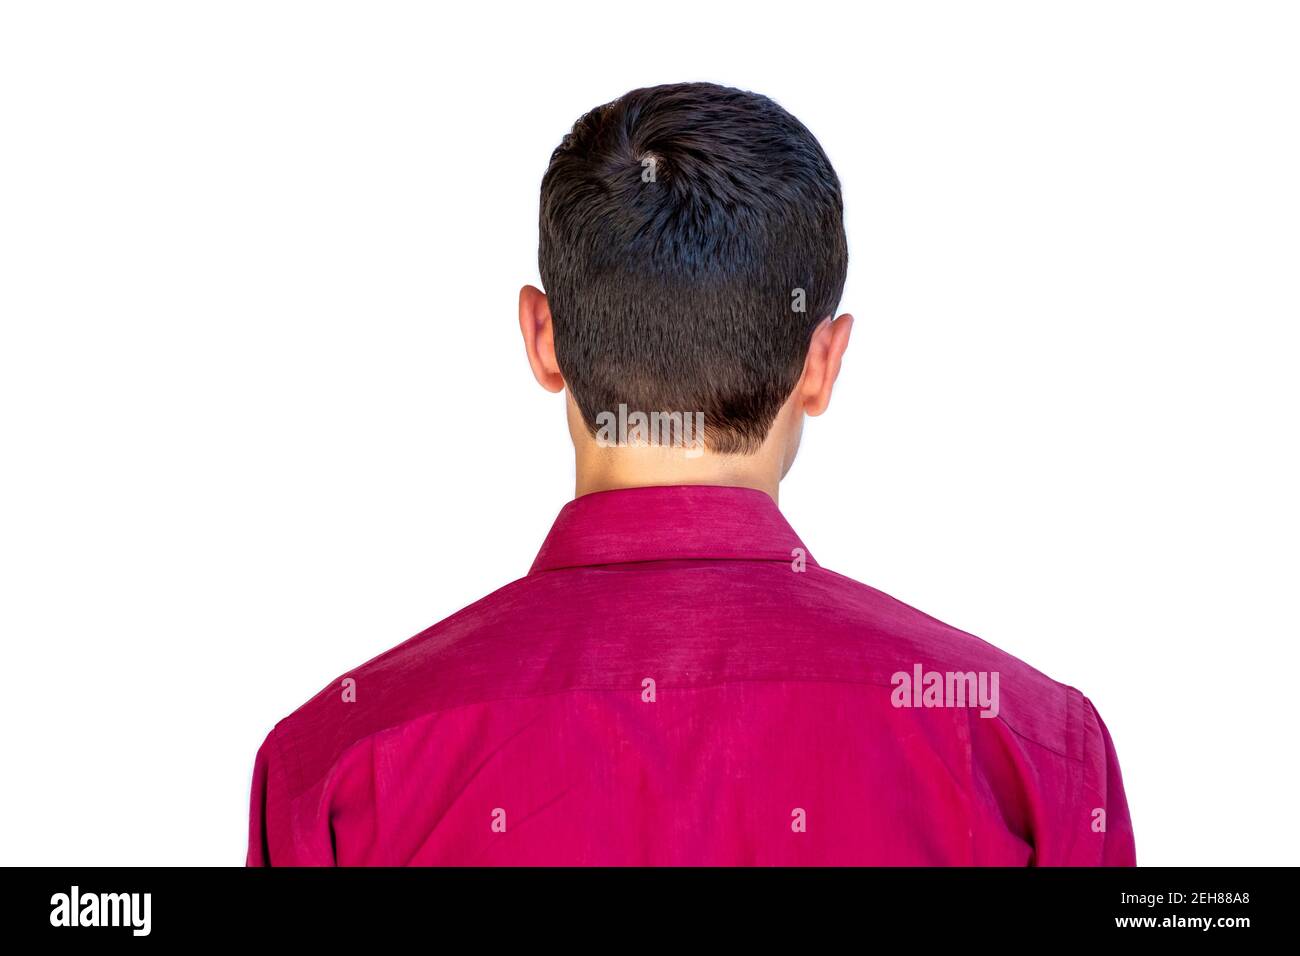 Vue arrière d'un homme arabe portant une chemise rouge Photo Stock - Alamy